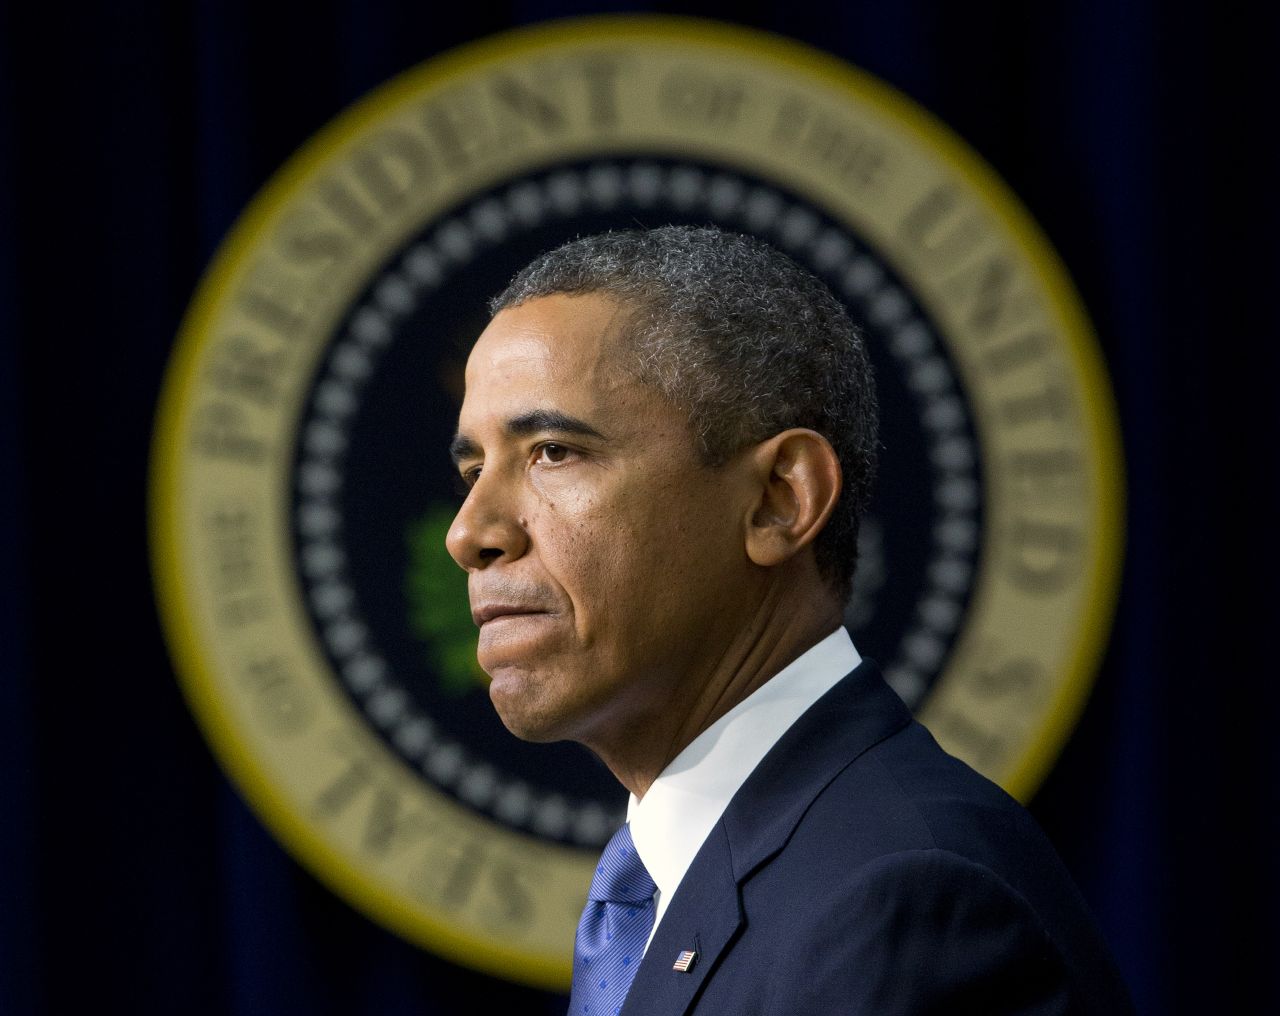 El presidente Obama se refirió al tiroteo en una conferencia de prensa.